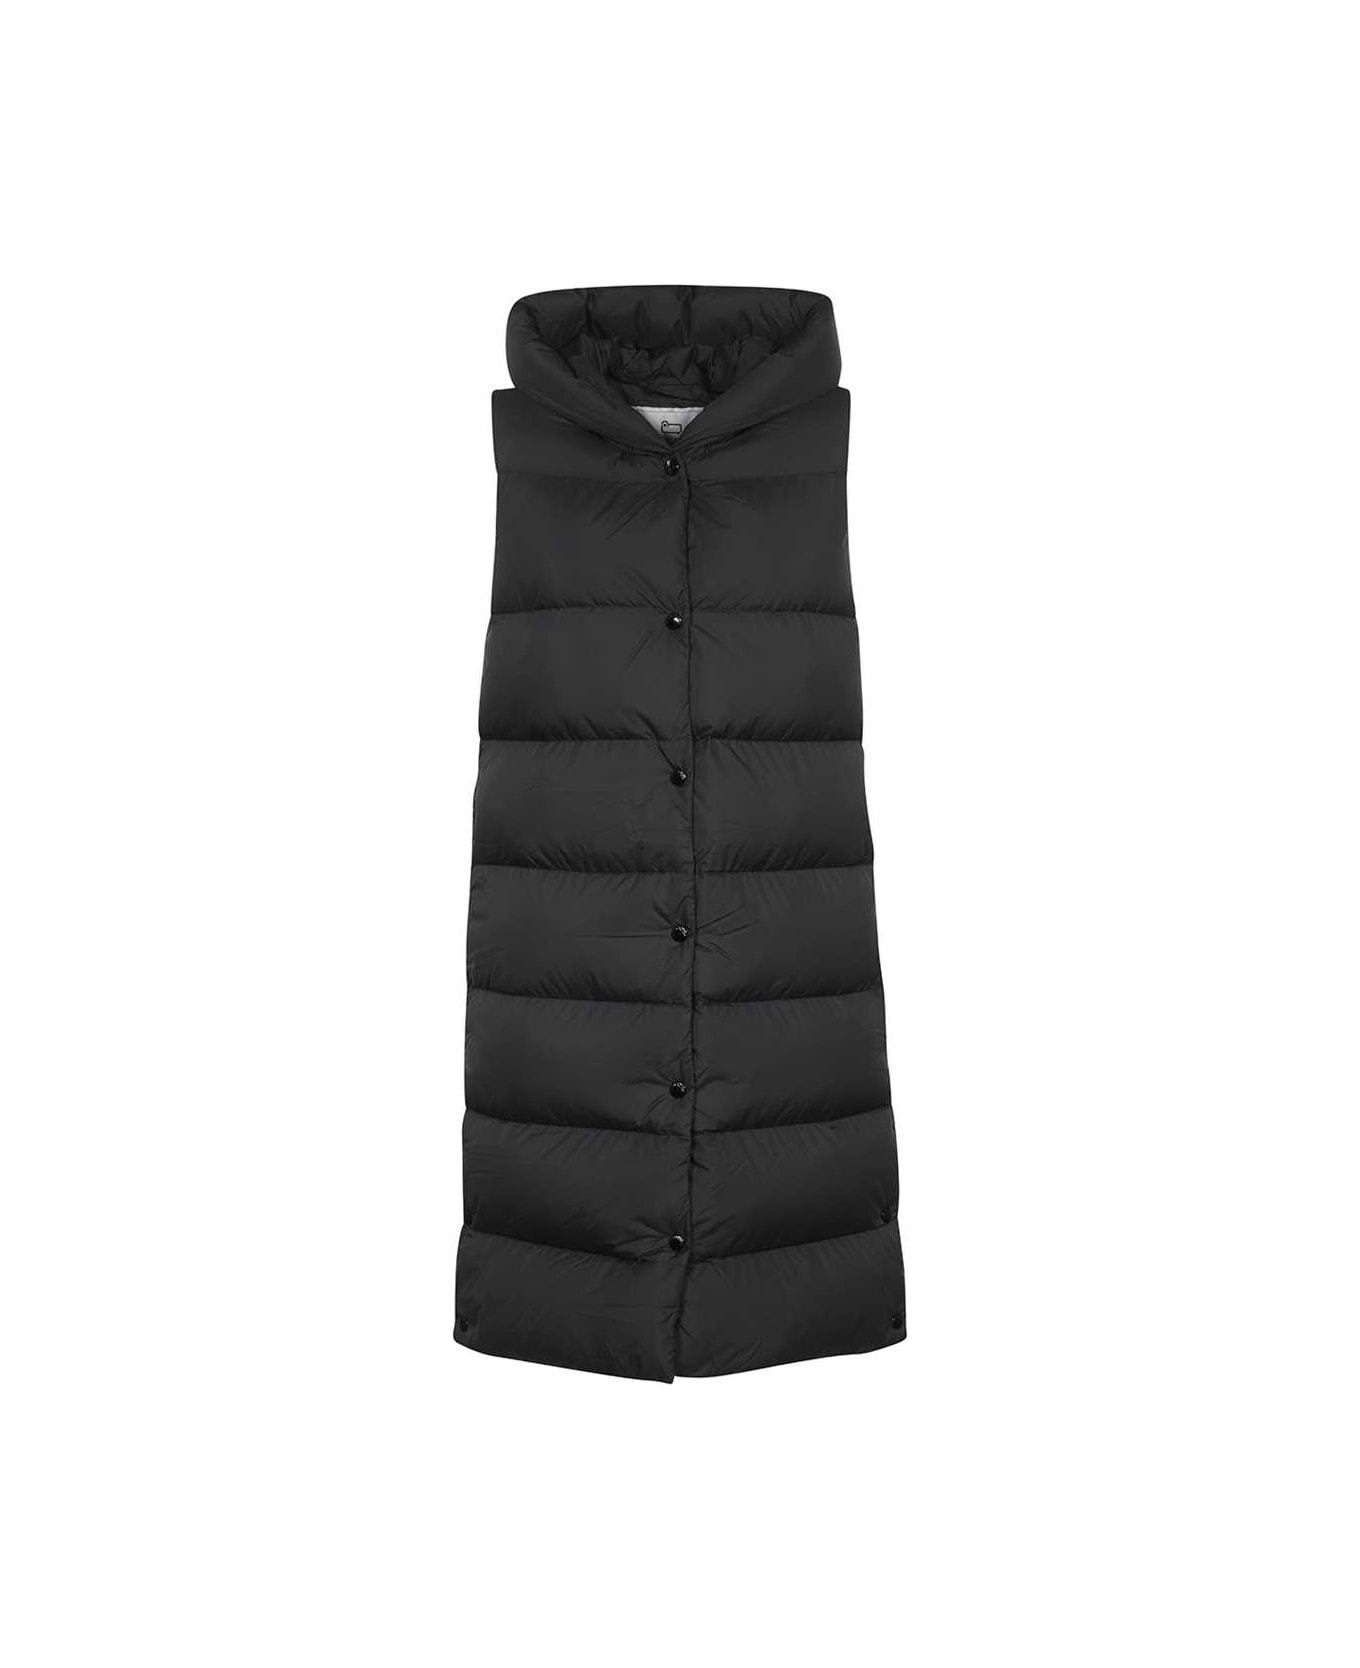 Woolrich Bodywarmer Jacket - black